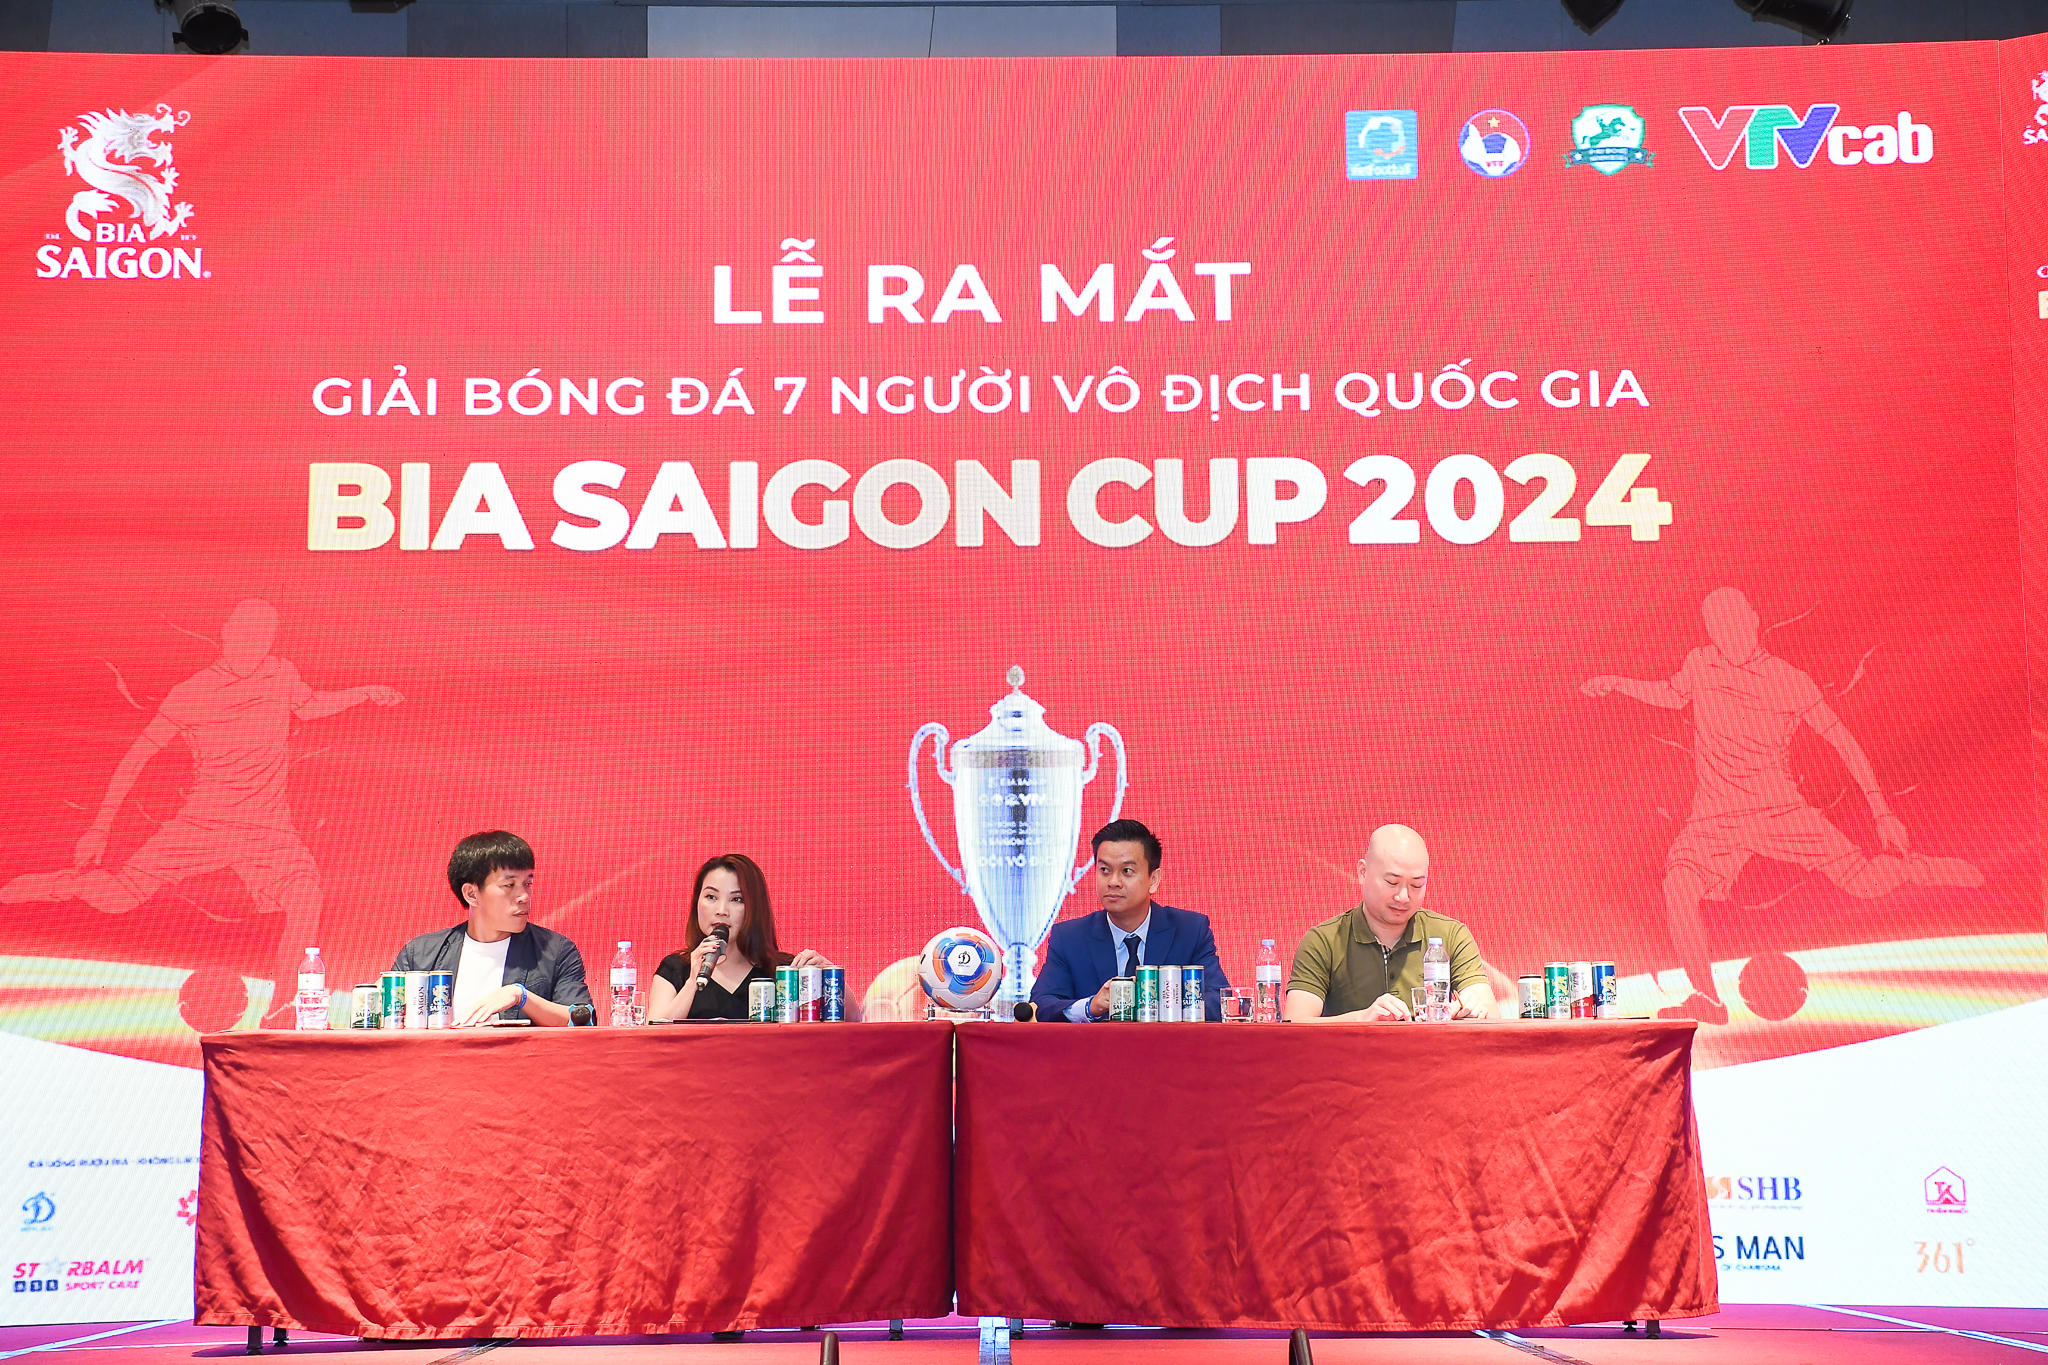 Đại diện Sabeco: “ Giải bóng đá 7 người vô địch quốc gia tạo ra sức ảnh hưởng hàng đầu lên cộng đồng”